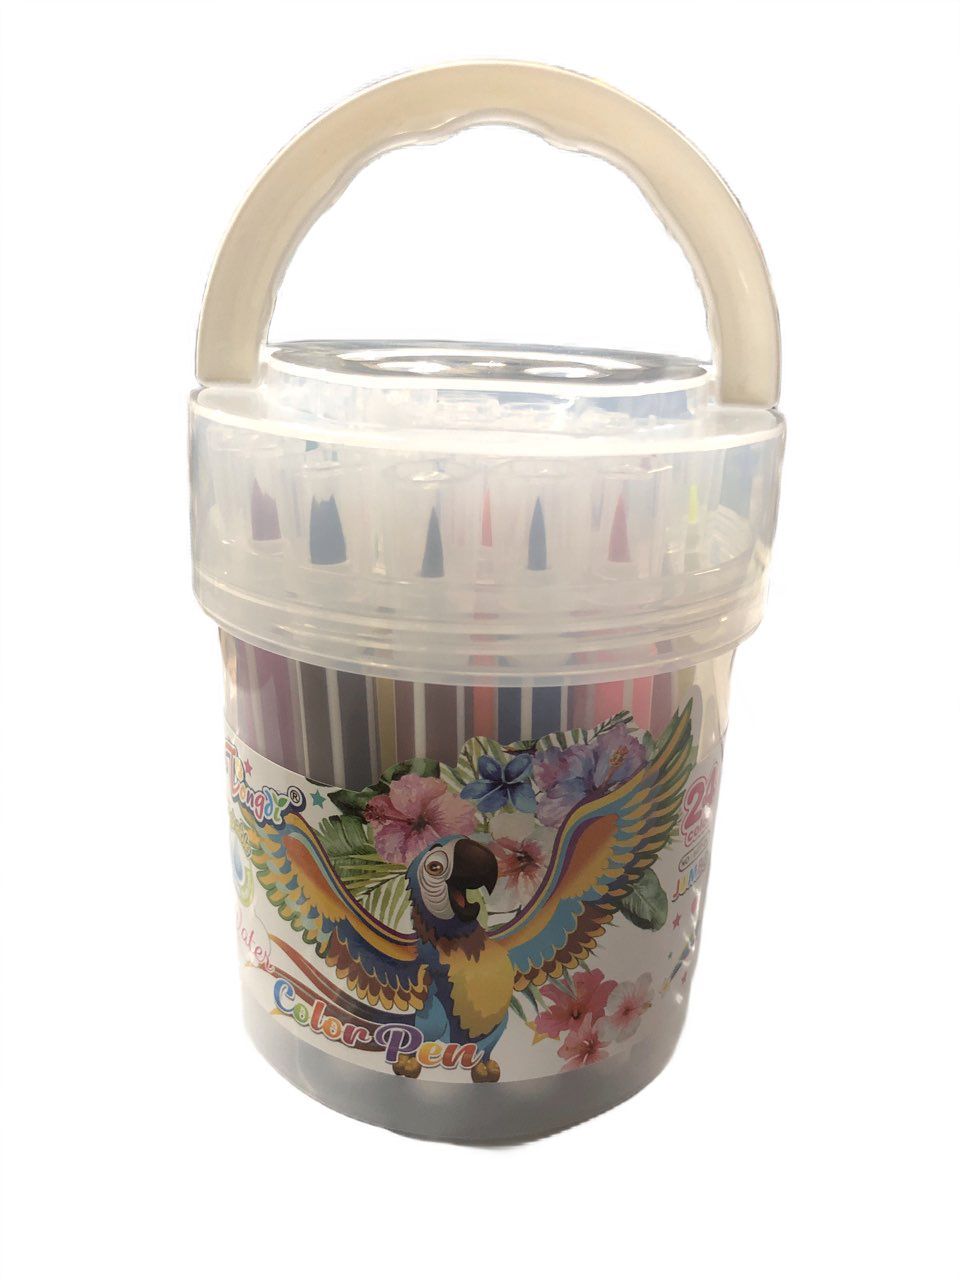 Набор фломастеров Tongdi TZ_Ф-6877 24 цвета полосатый корпус в пластиковой банке с ручкой